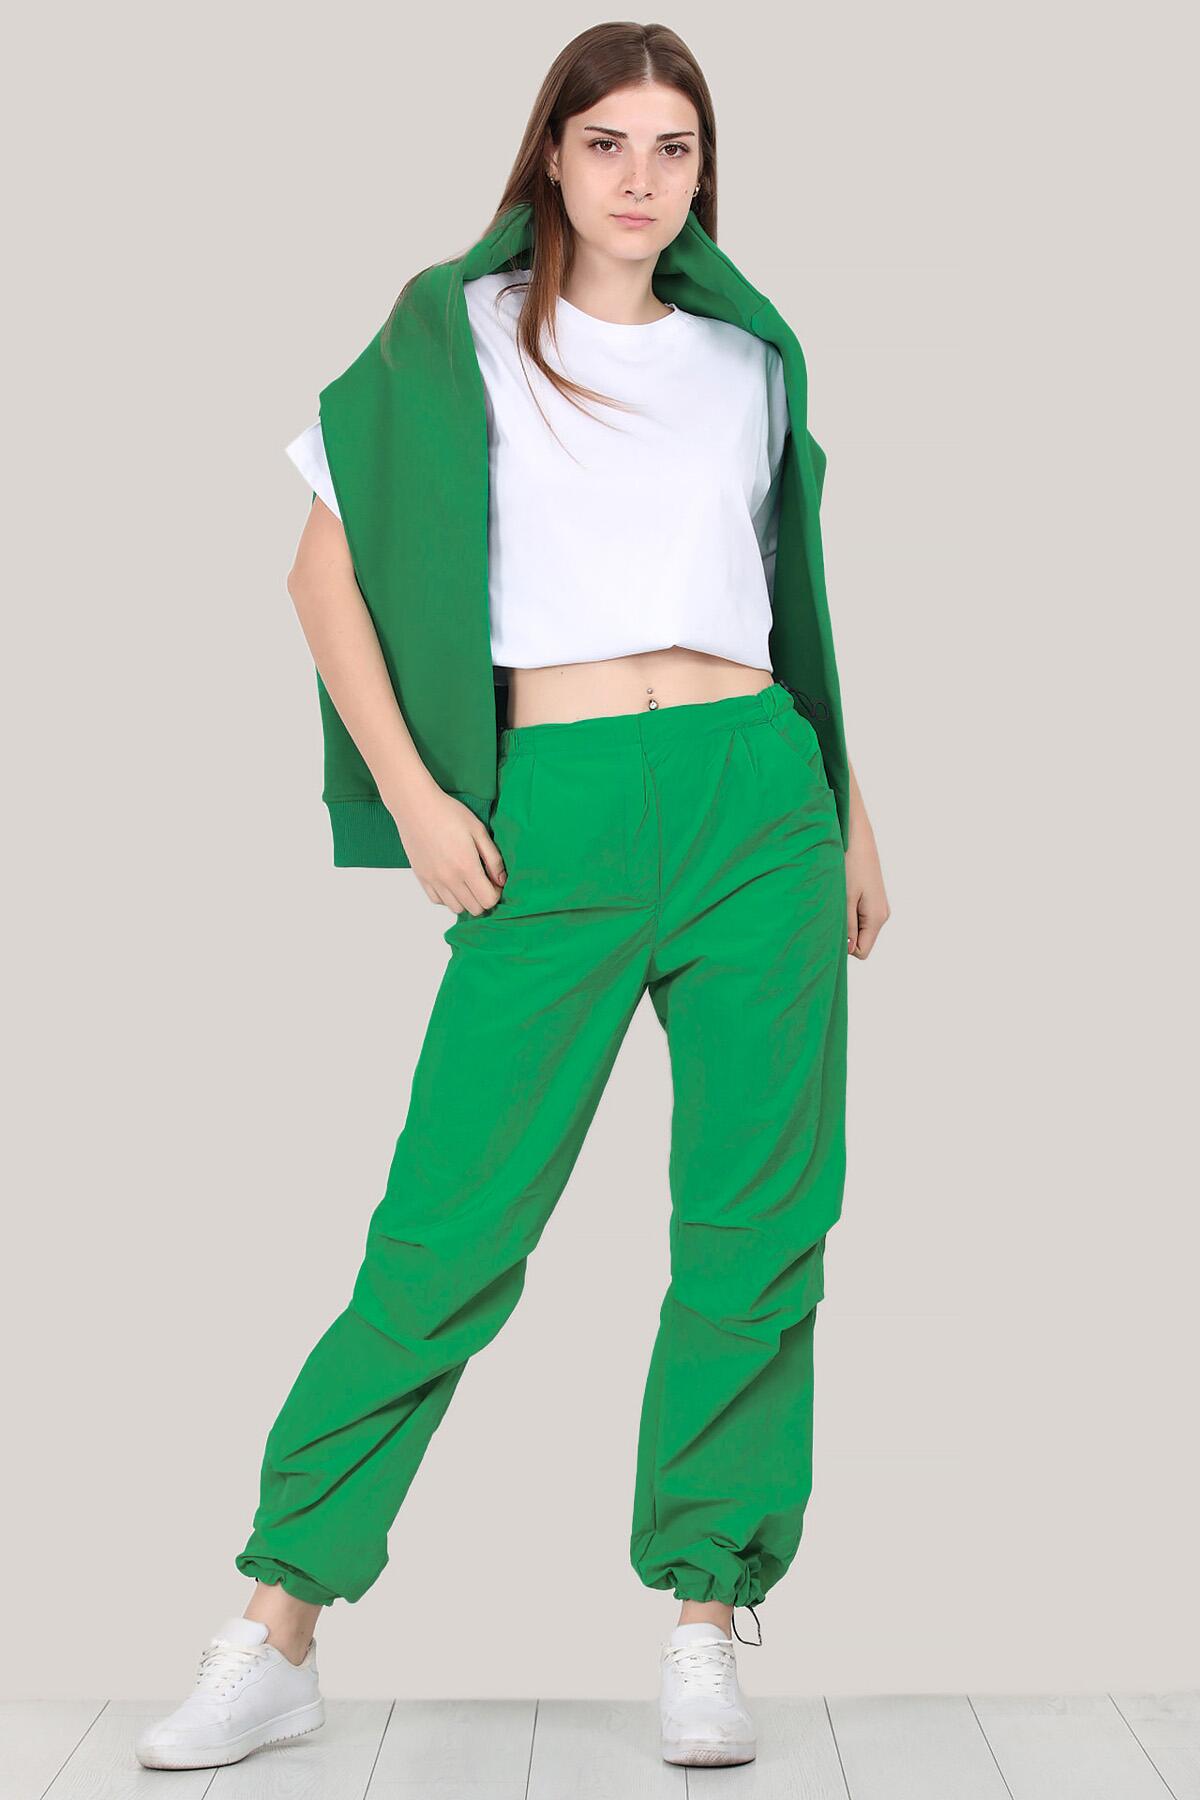 Kadın Paraşüt Pantolon Yeşil | Patırtı